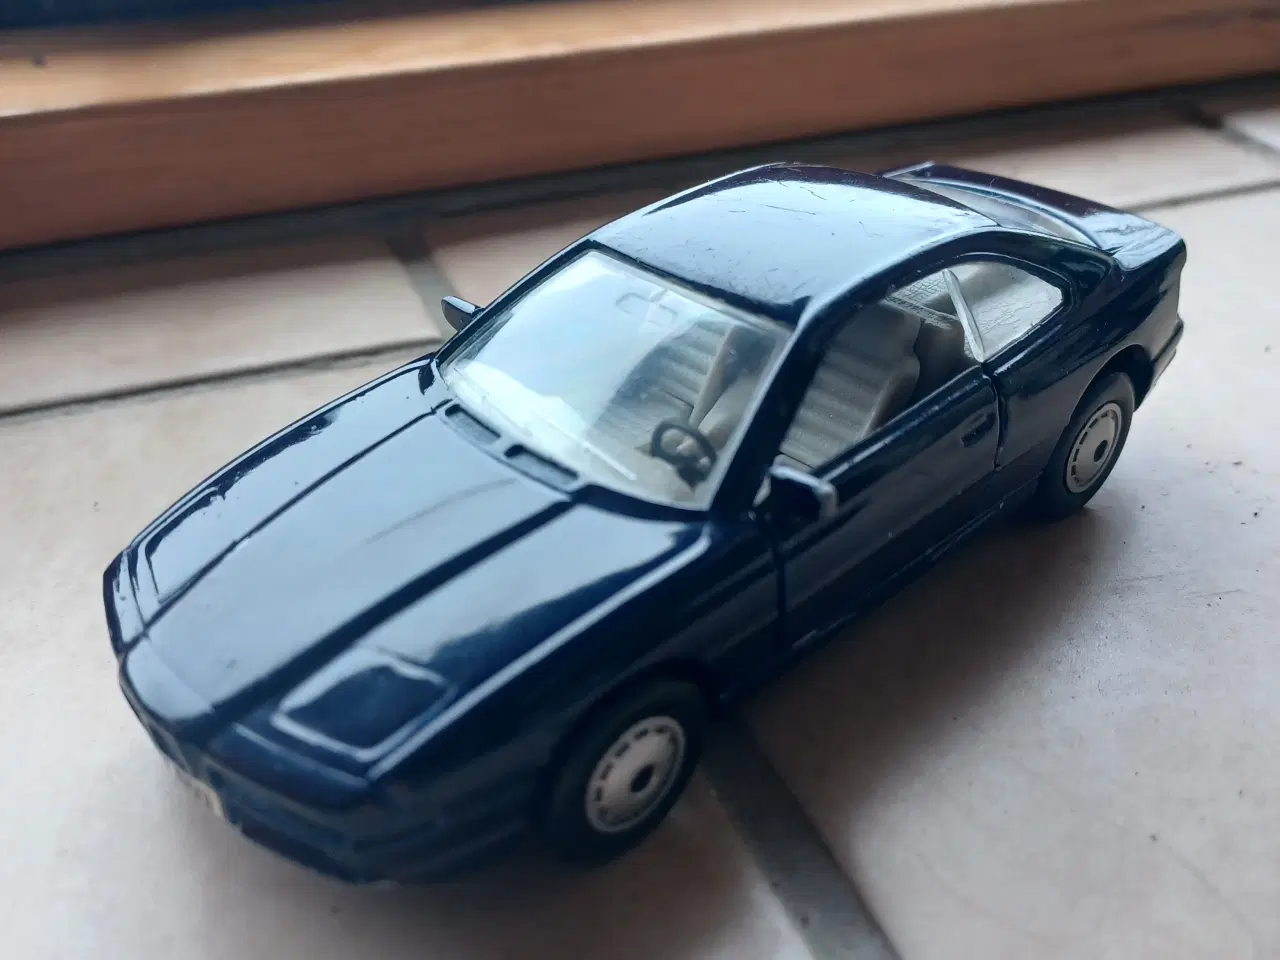 Billede 1 - BMW 850i mørkeblå metalbil